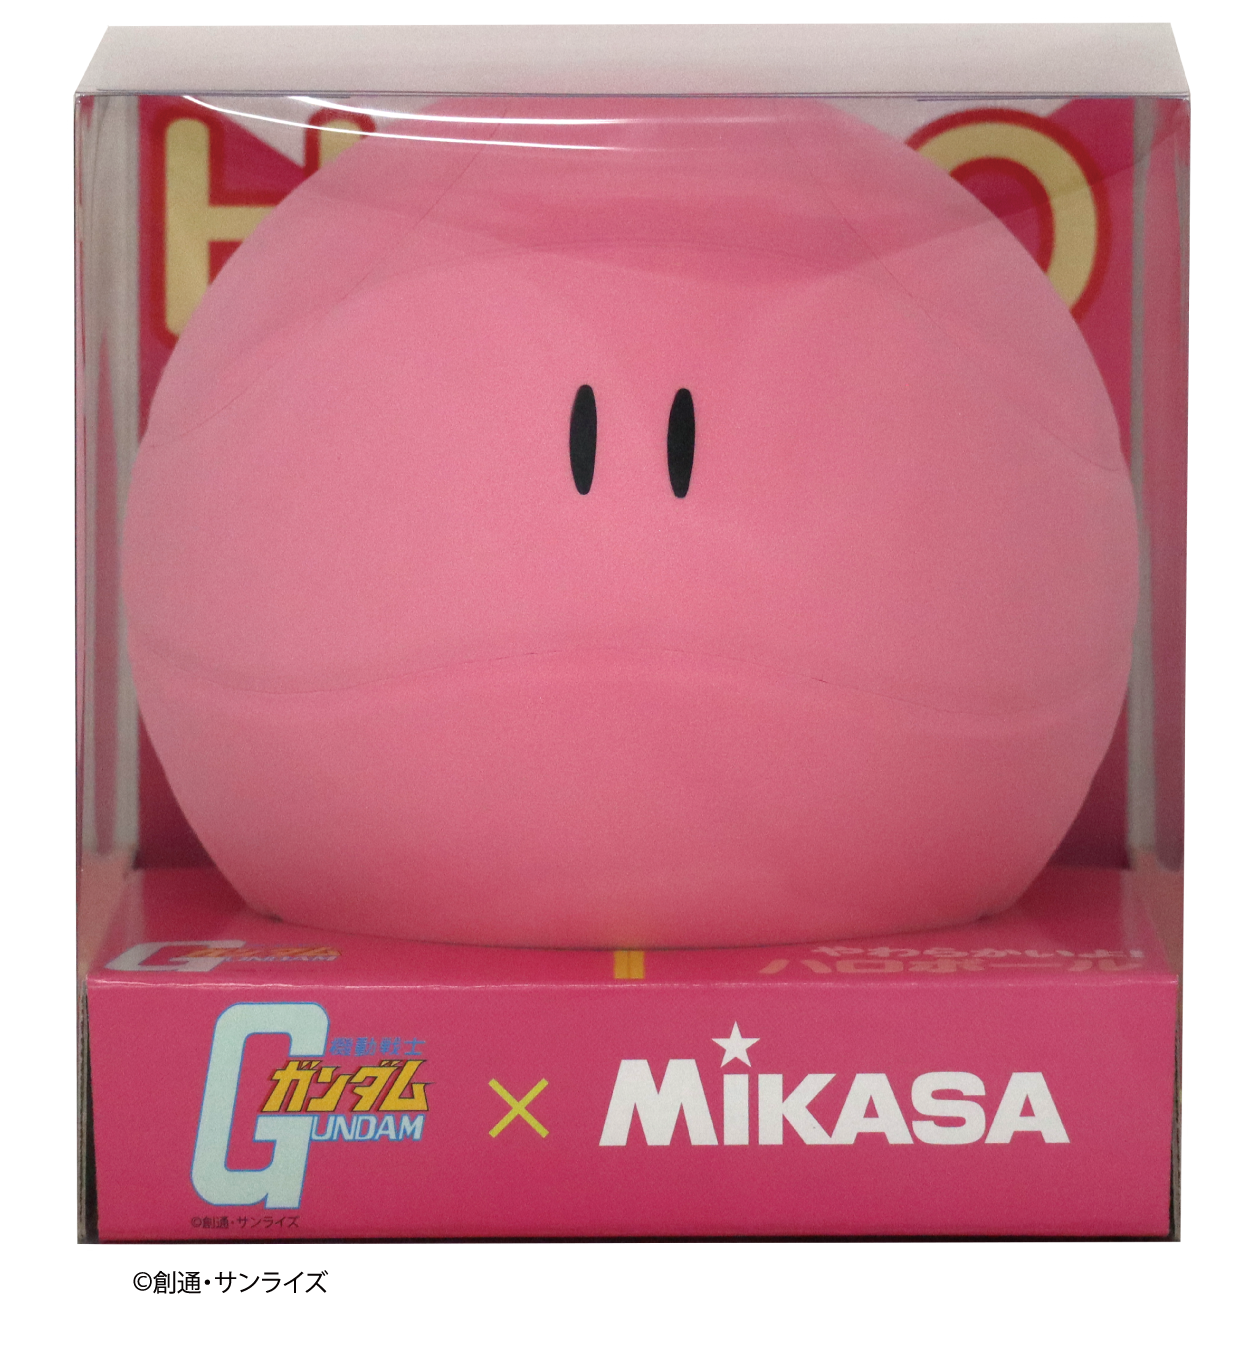 機動戦士ガンダム ハロボールのピンクモデルが6月25日 木 より発売決定 株式会社ミカサ Mikasa ボール スポーツ用品 コーポレートサイト